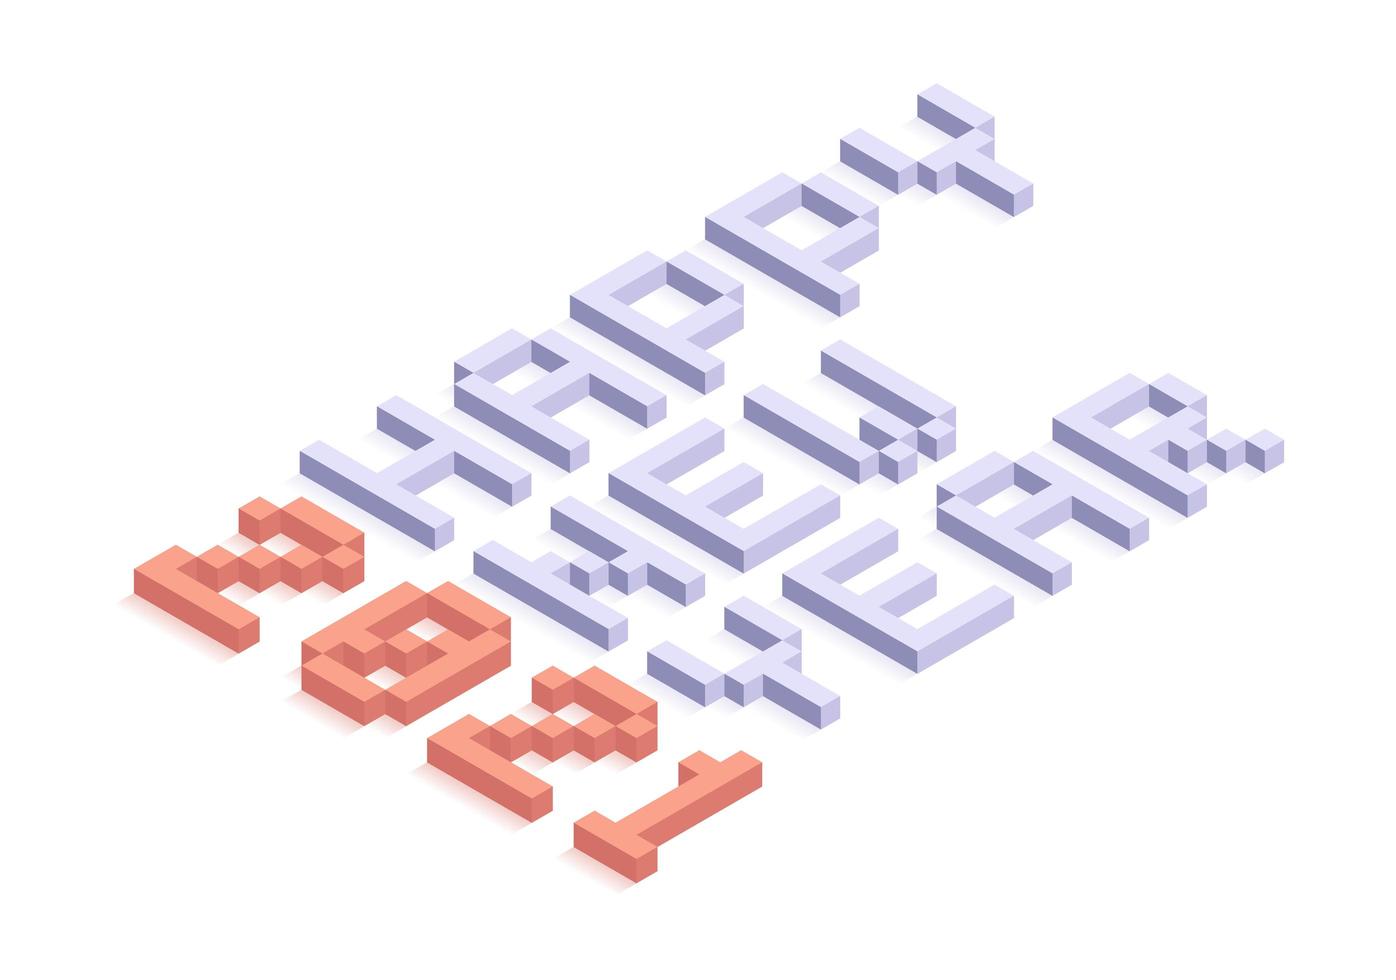 felice anno nuovo 2021 tipografia isometrica vettore